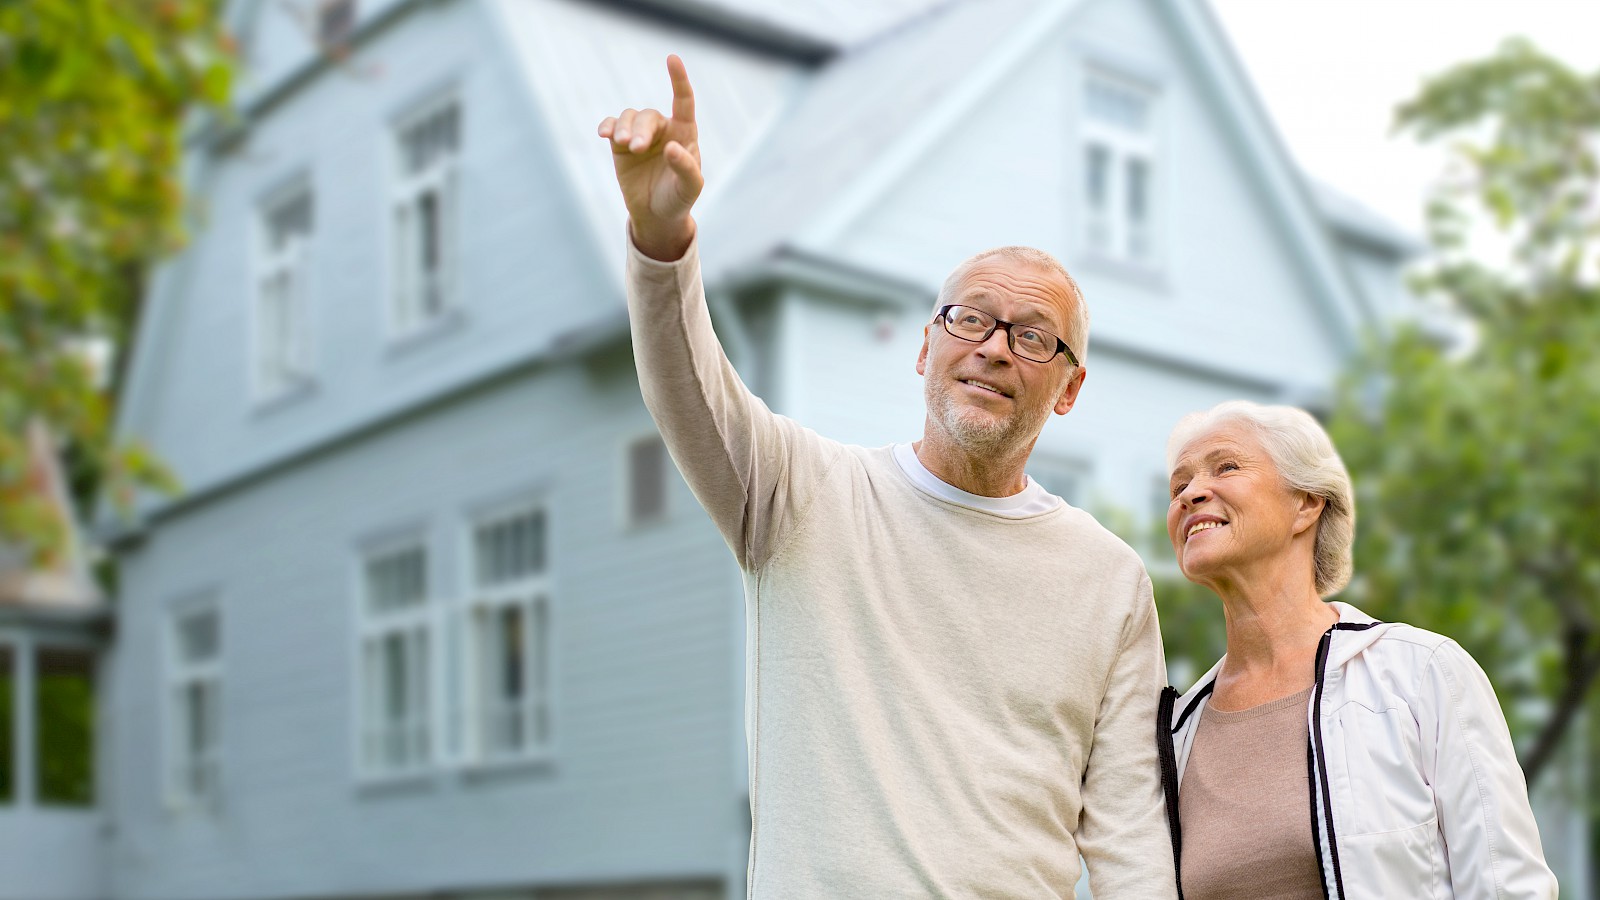 Immobilie im Alter: Verkaufen oder vermieten?